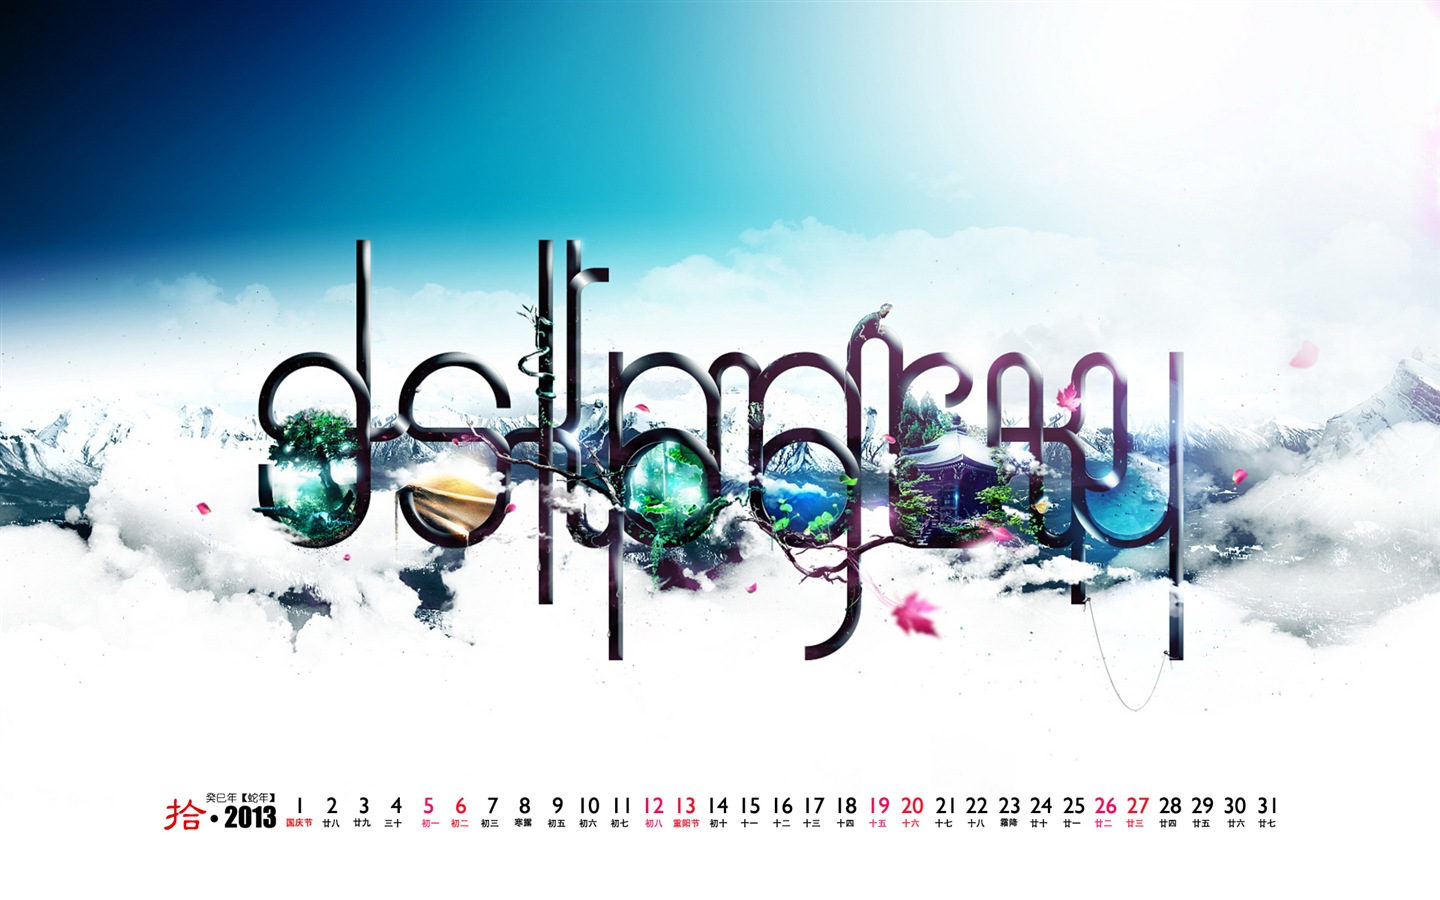 10 2013 calendario fondo de pantalla (2) #2 - 1440x900